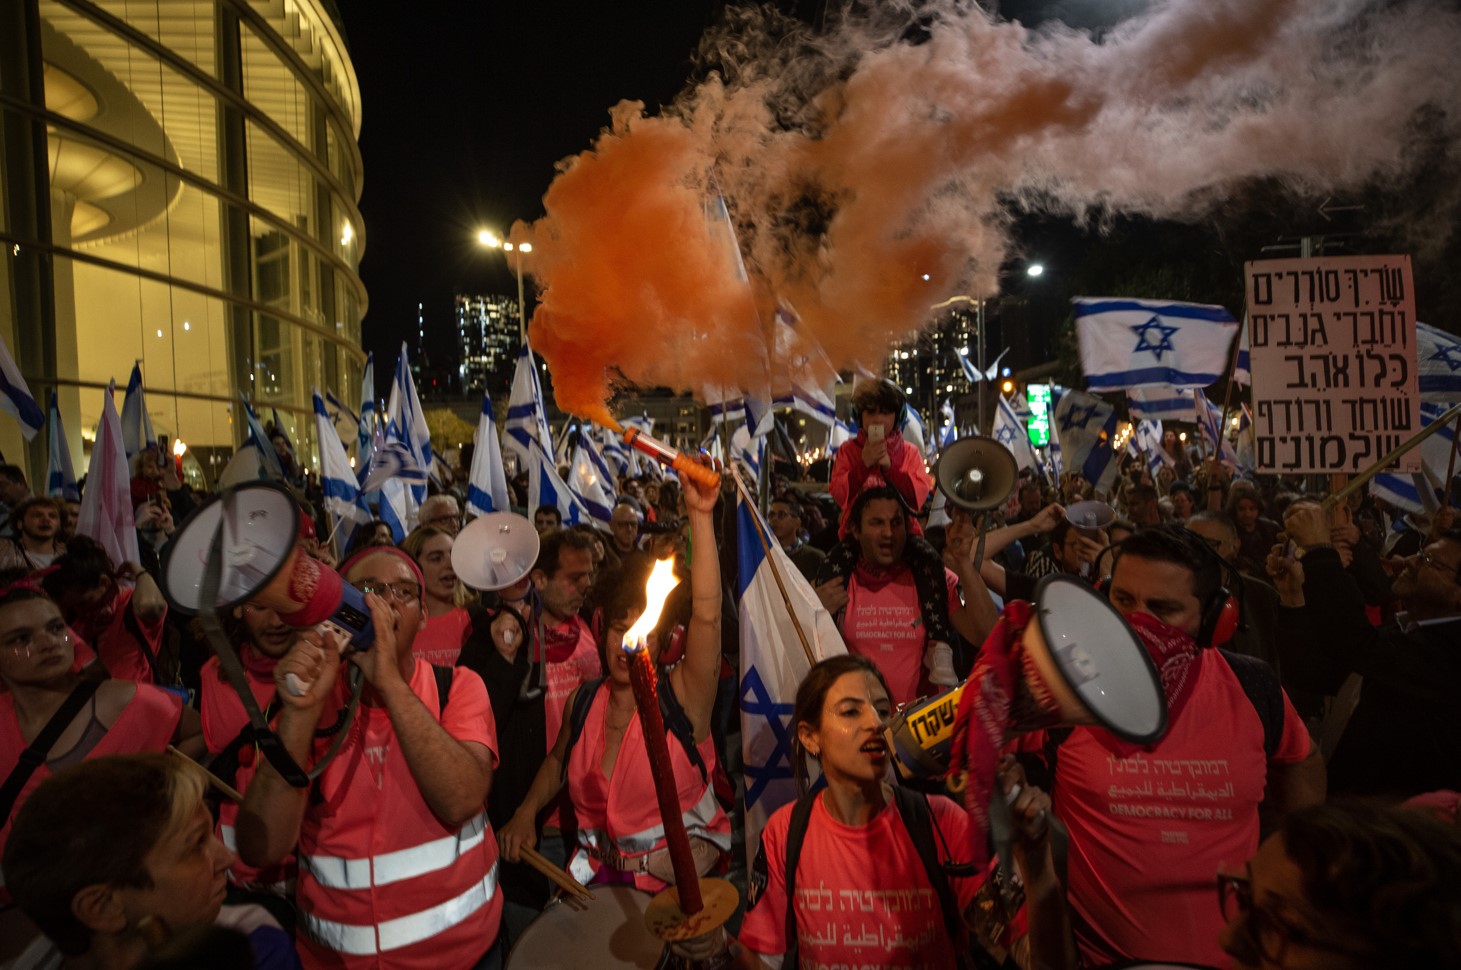 İşgal rejiminde Bünyamin Netanyahu hükümetinin, yargının yetkilerini kısıtlayan yasal düzenlemelerine karşı "sivil itaatsizlik günü" kapsamında, ülke genelinde kitlesel protestolar gerçekleştiriliyor.